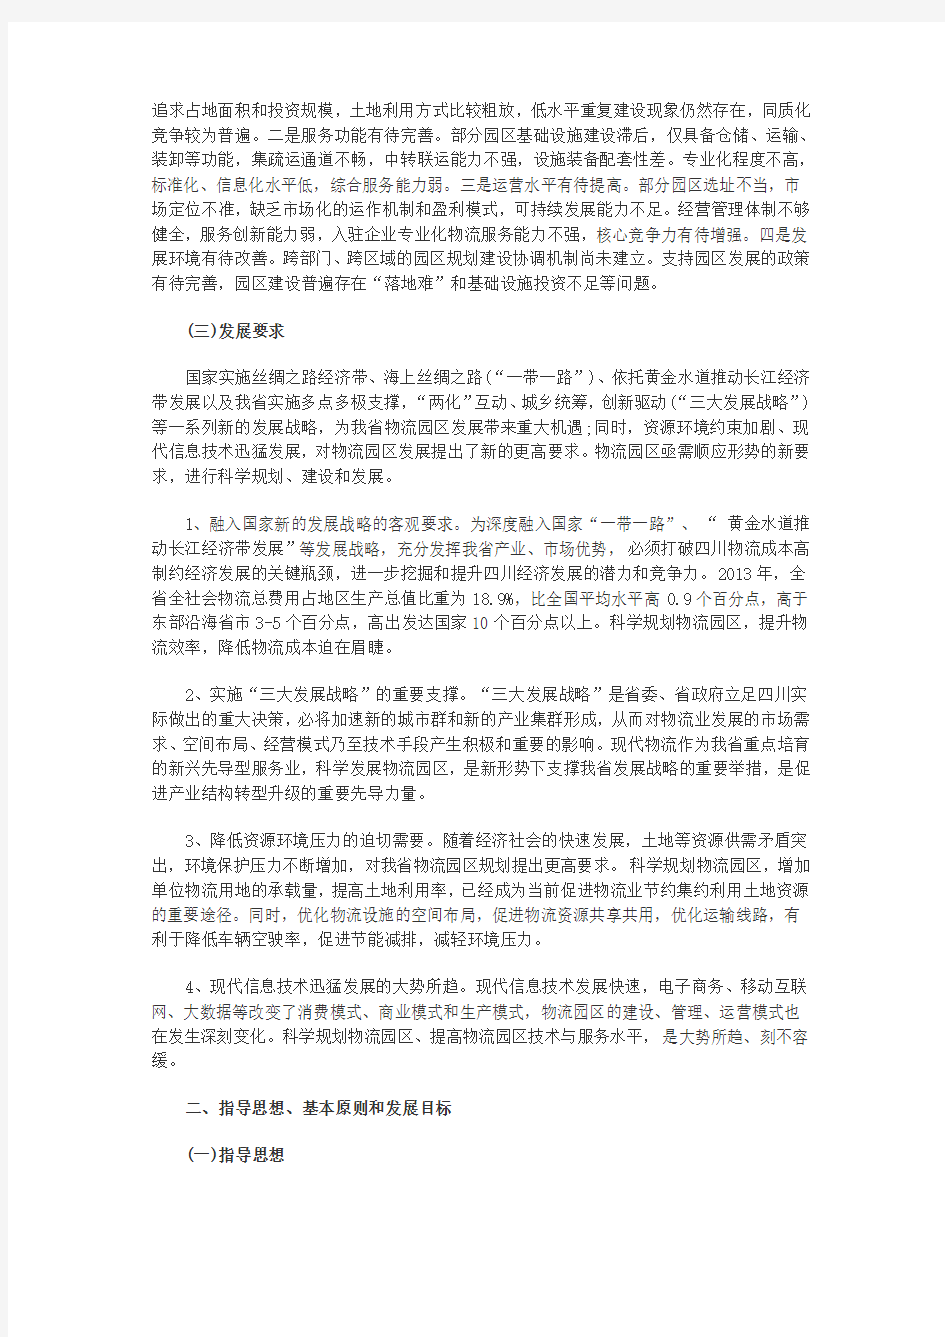 四川省物流园区发展规划2014-2020